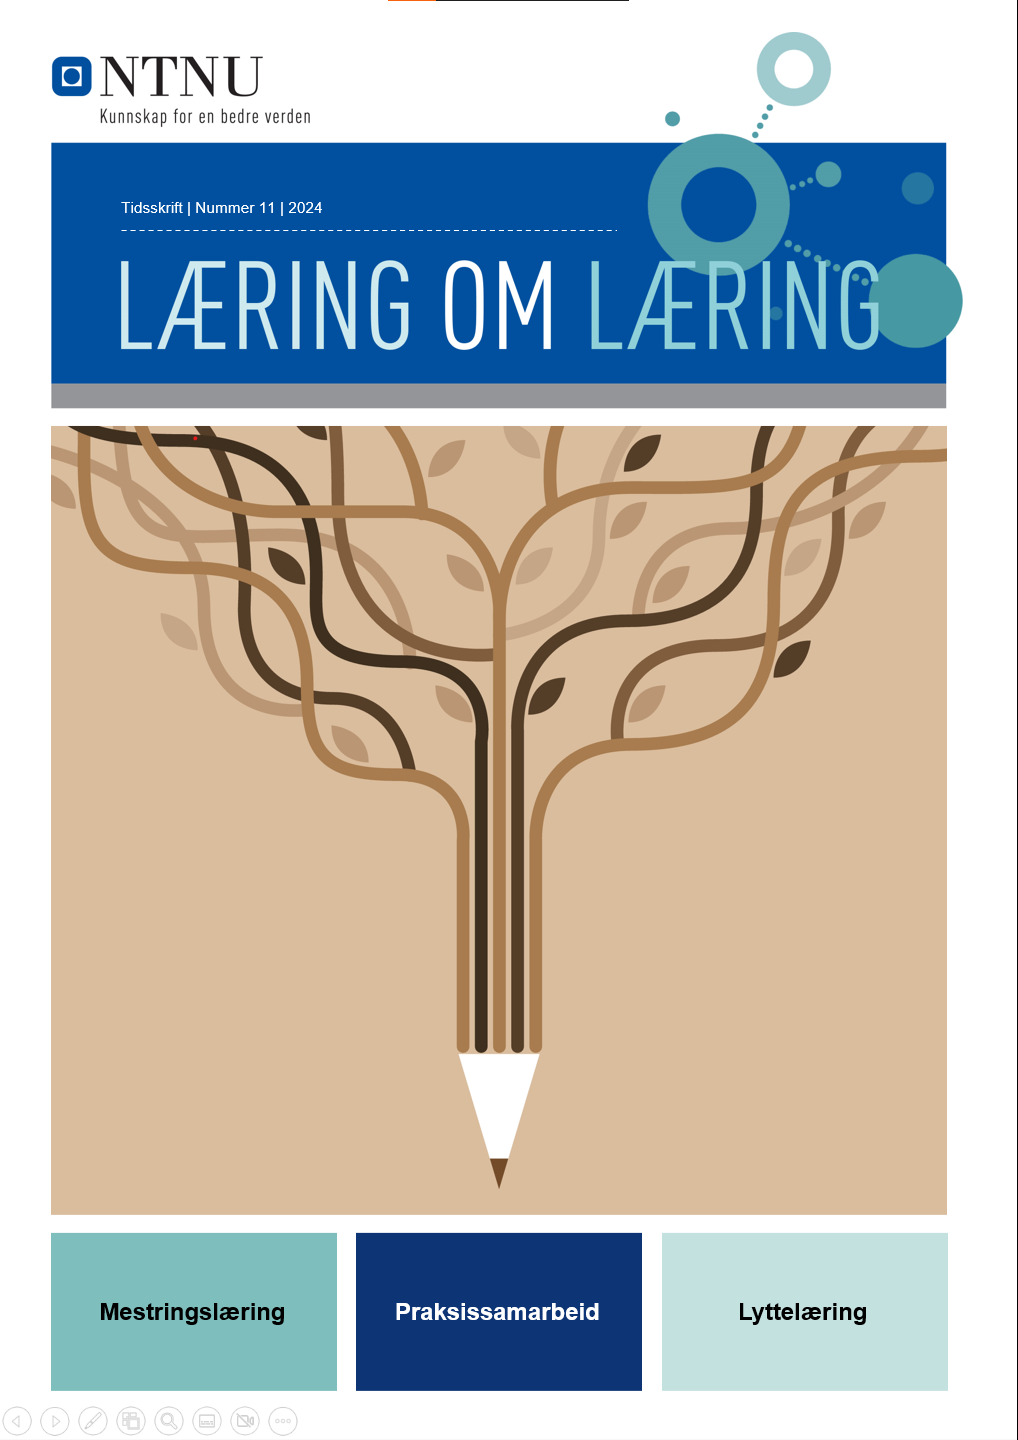 Omslaget til læring om læring. Det viser en loddrett blyant som blir til et tre. Nederst står stikkordene mestringslæring, praksissamarbeid og lyttelæring